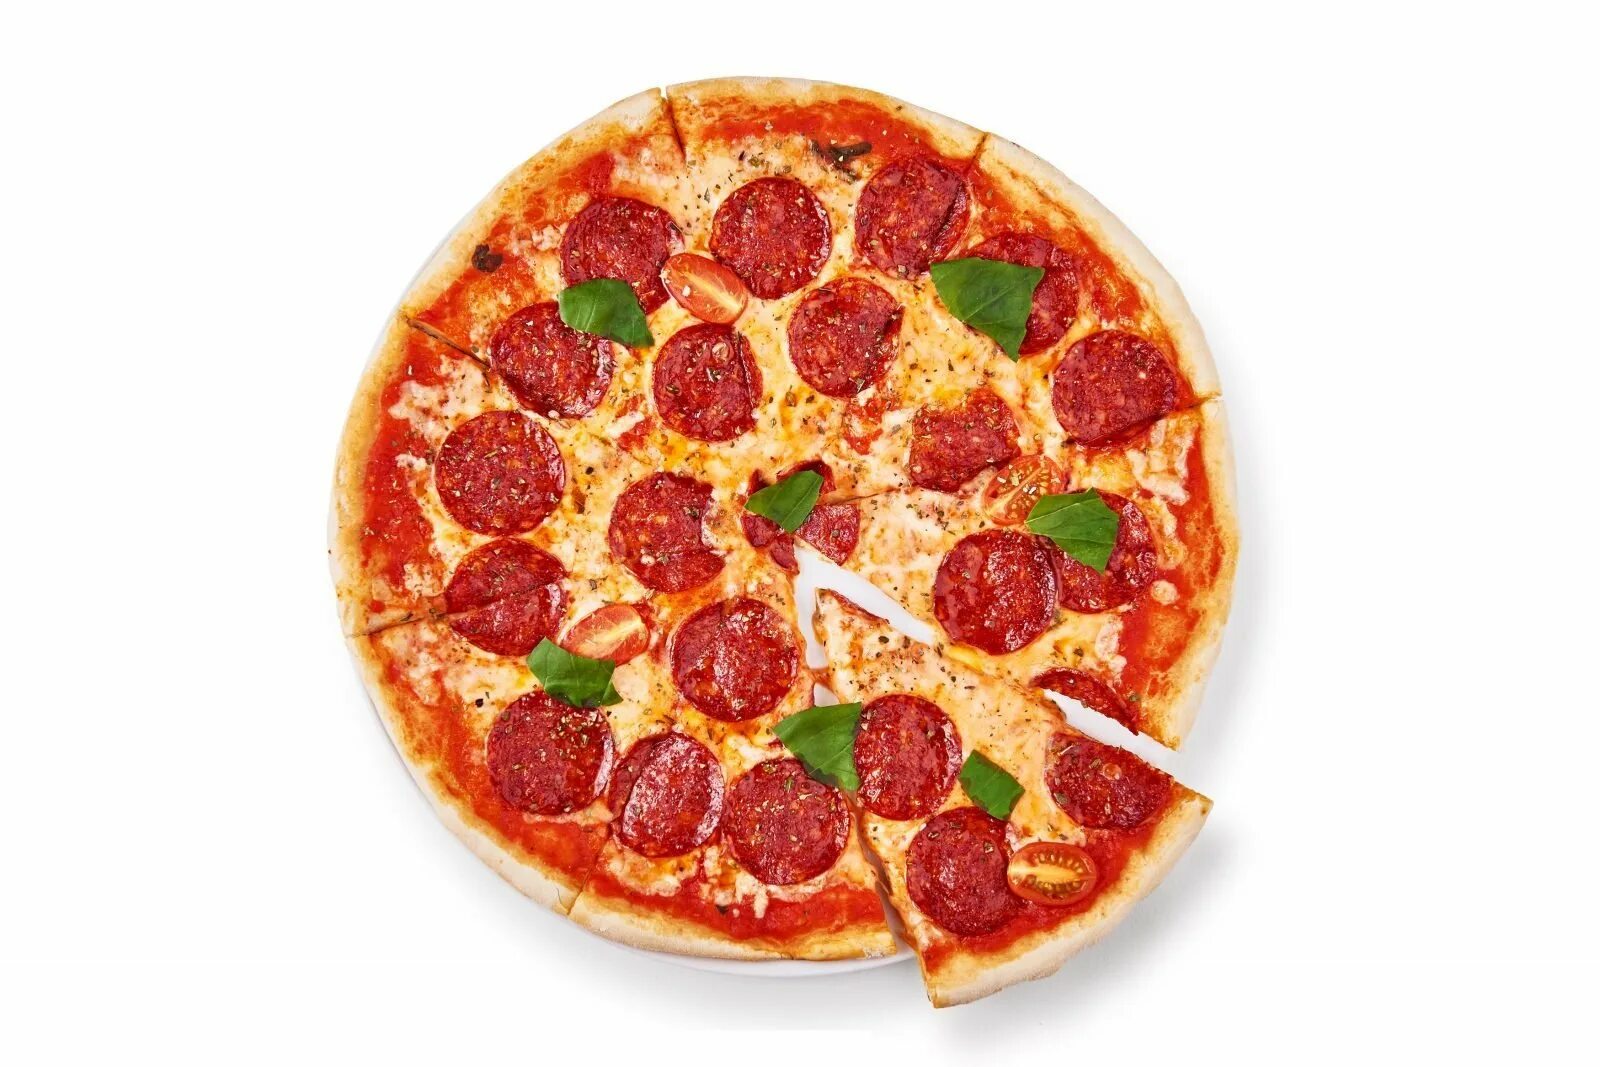 Така пицца. Пицца пепперони. Пицца пепперони 35см. Пицца пепперони на белом фоне.